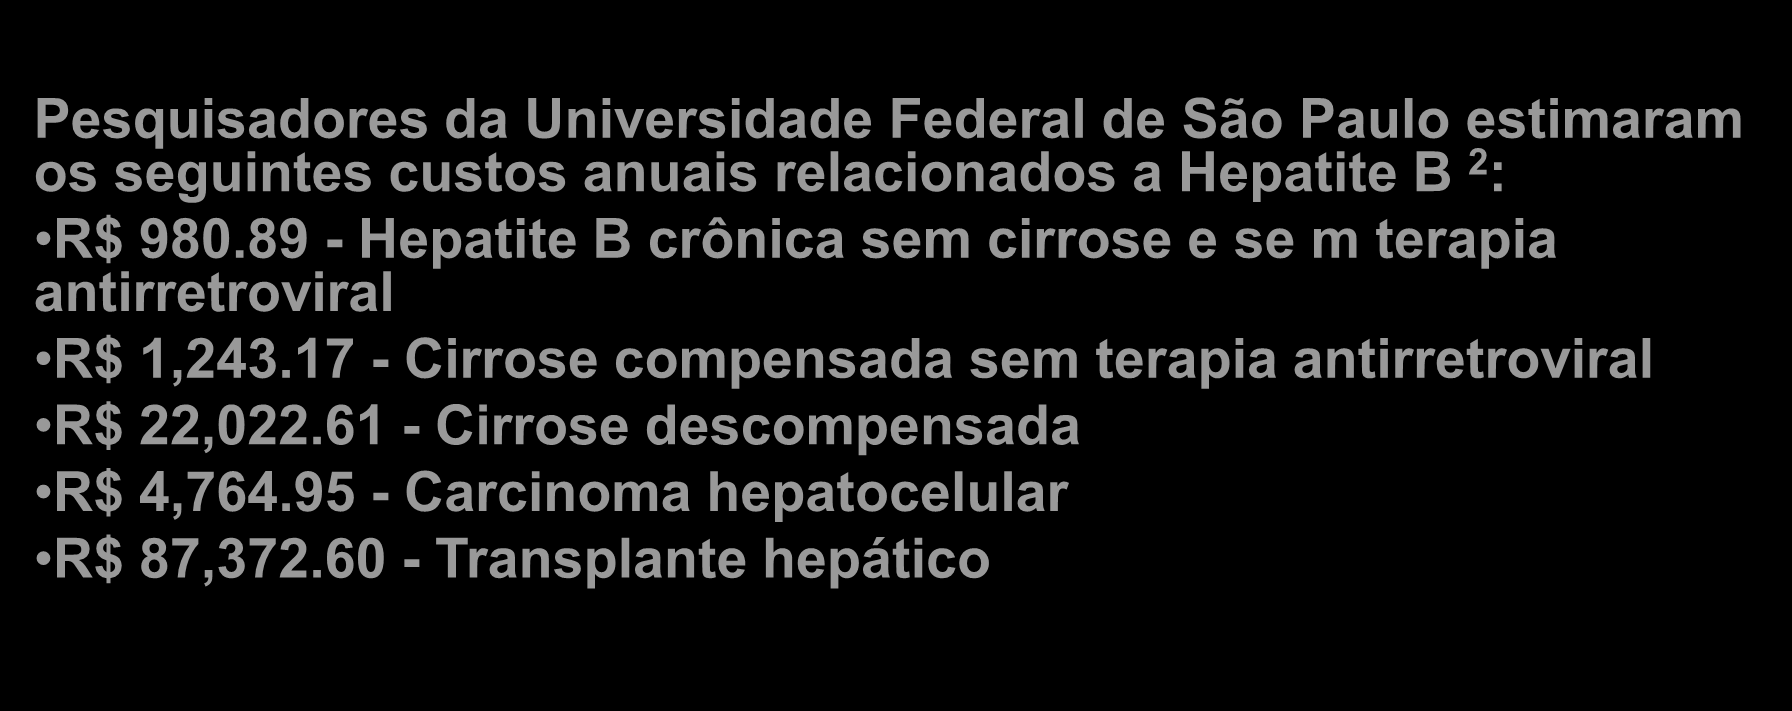 Custo de tratamento de pacientes infectados por HIV e Hepatite B no Brasil O Ministério da Saúde investiu um total anual de R$ 650 milhões em retrovirais para o tratamento de pacientes com HIV 1,